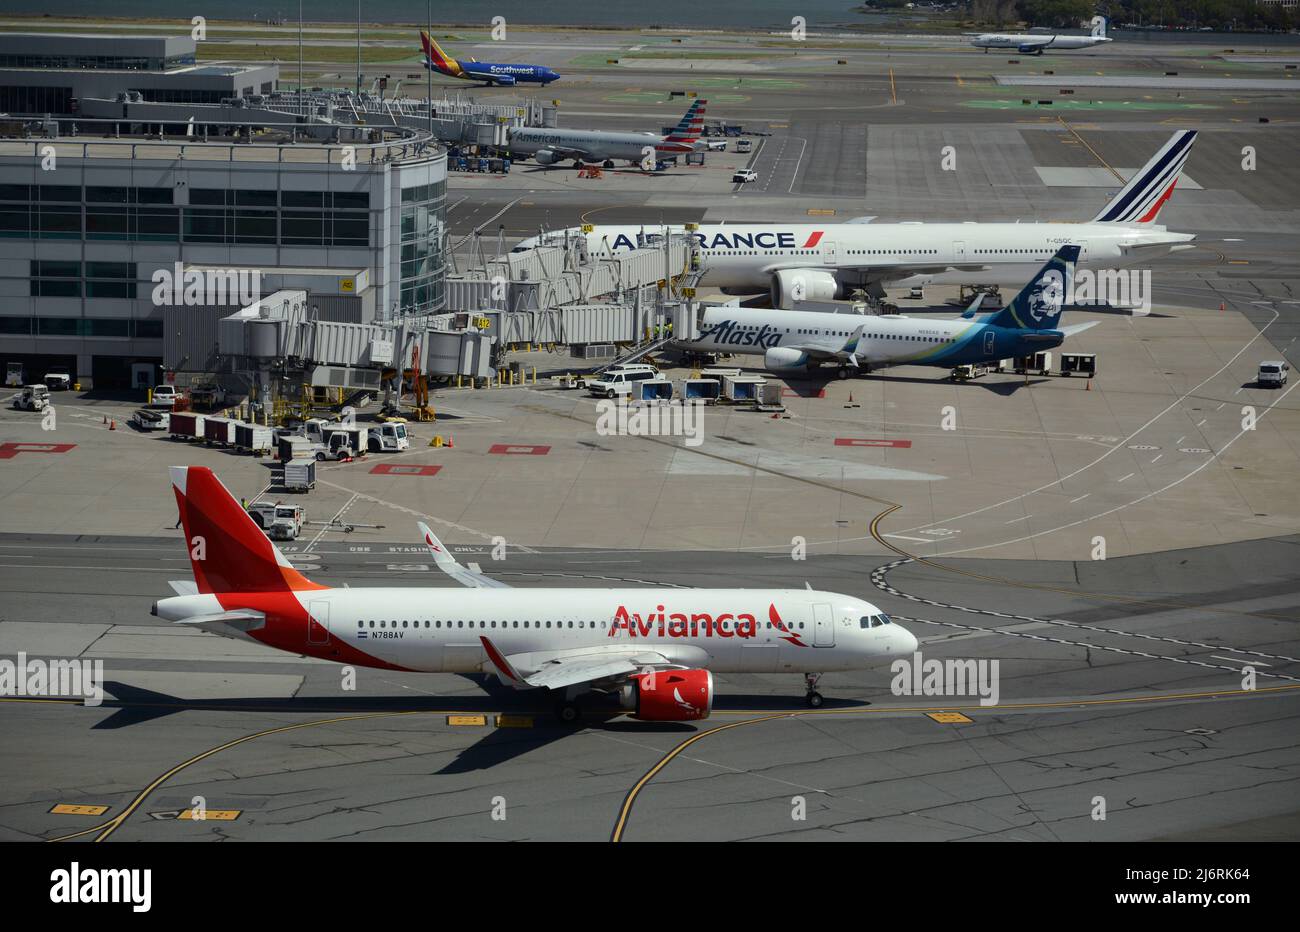 Un avion-taxi Avianca Airlines Airbus A320 passagers à l'aéroport international de San Francisco, en Californie. Banque D'Images